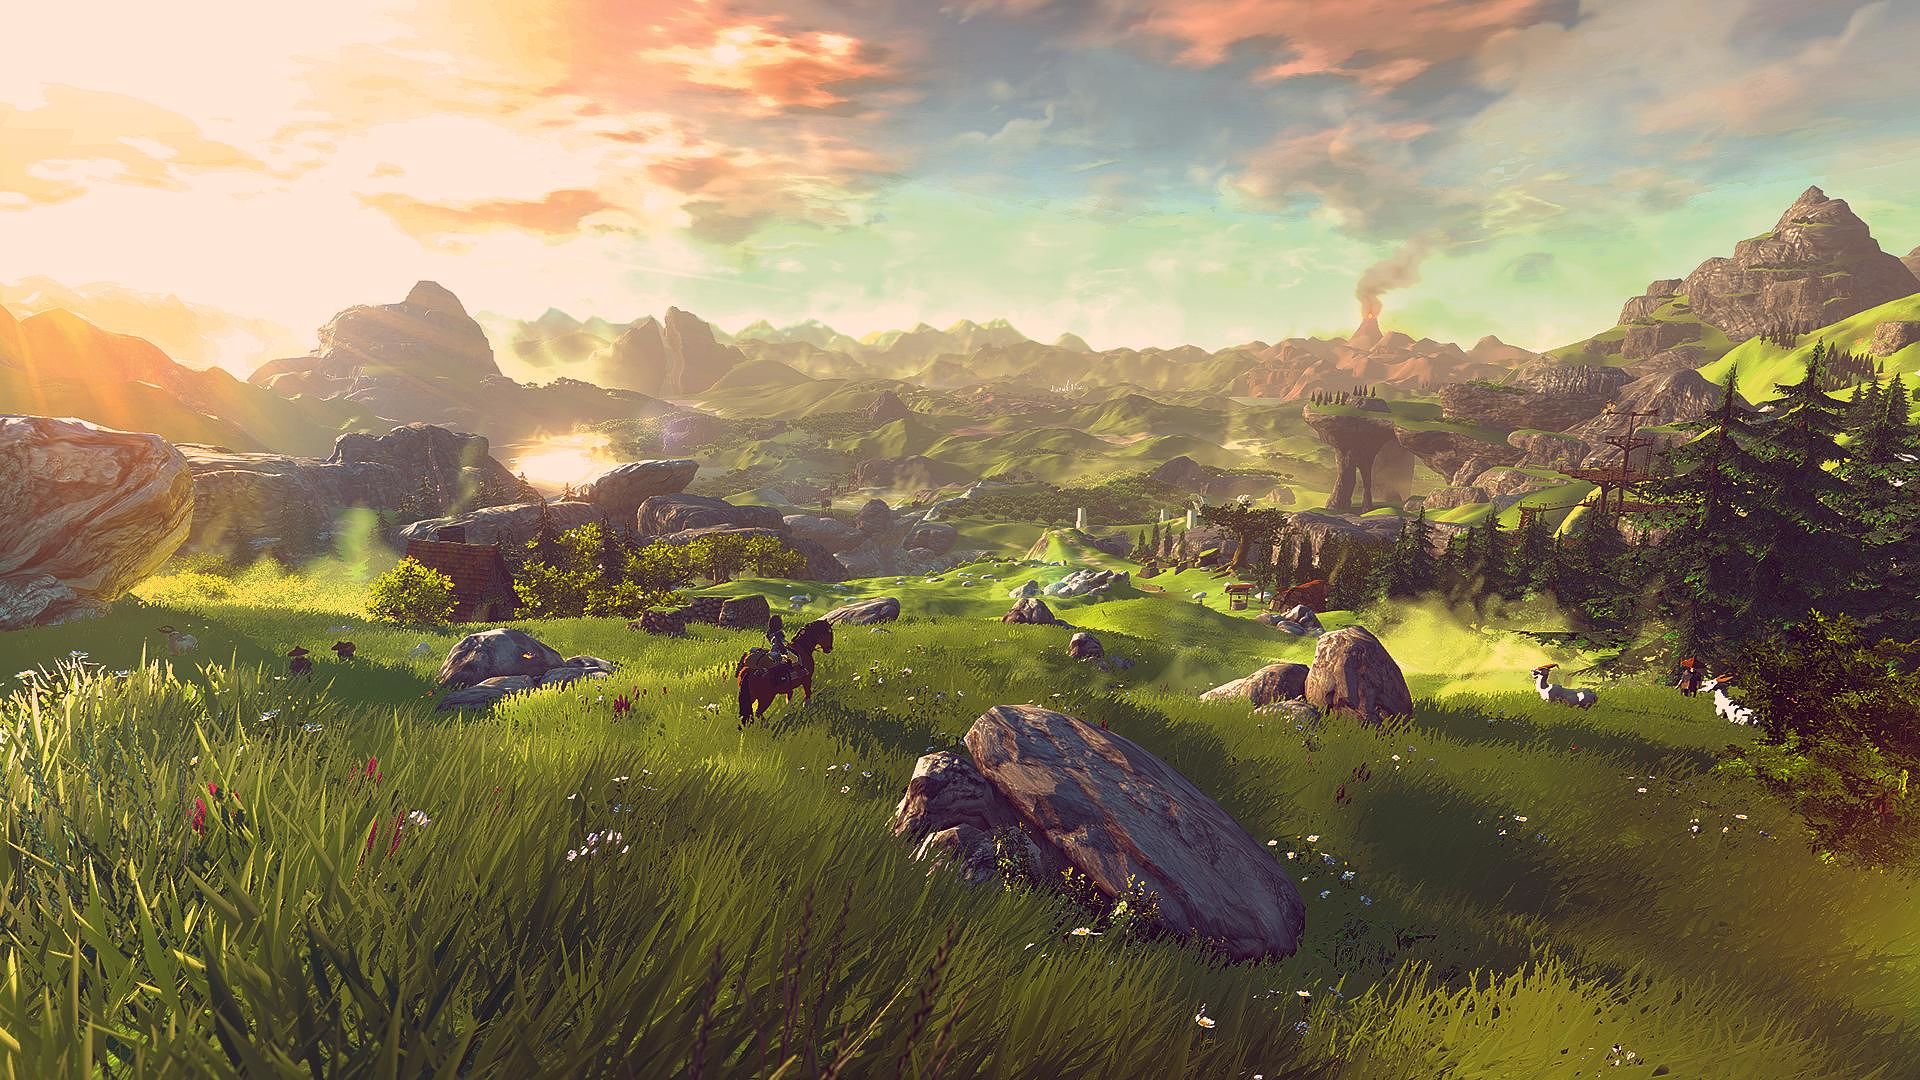 Le paysage ouvert de Zelda: Breath of the Wild.